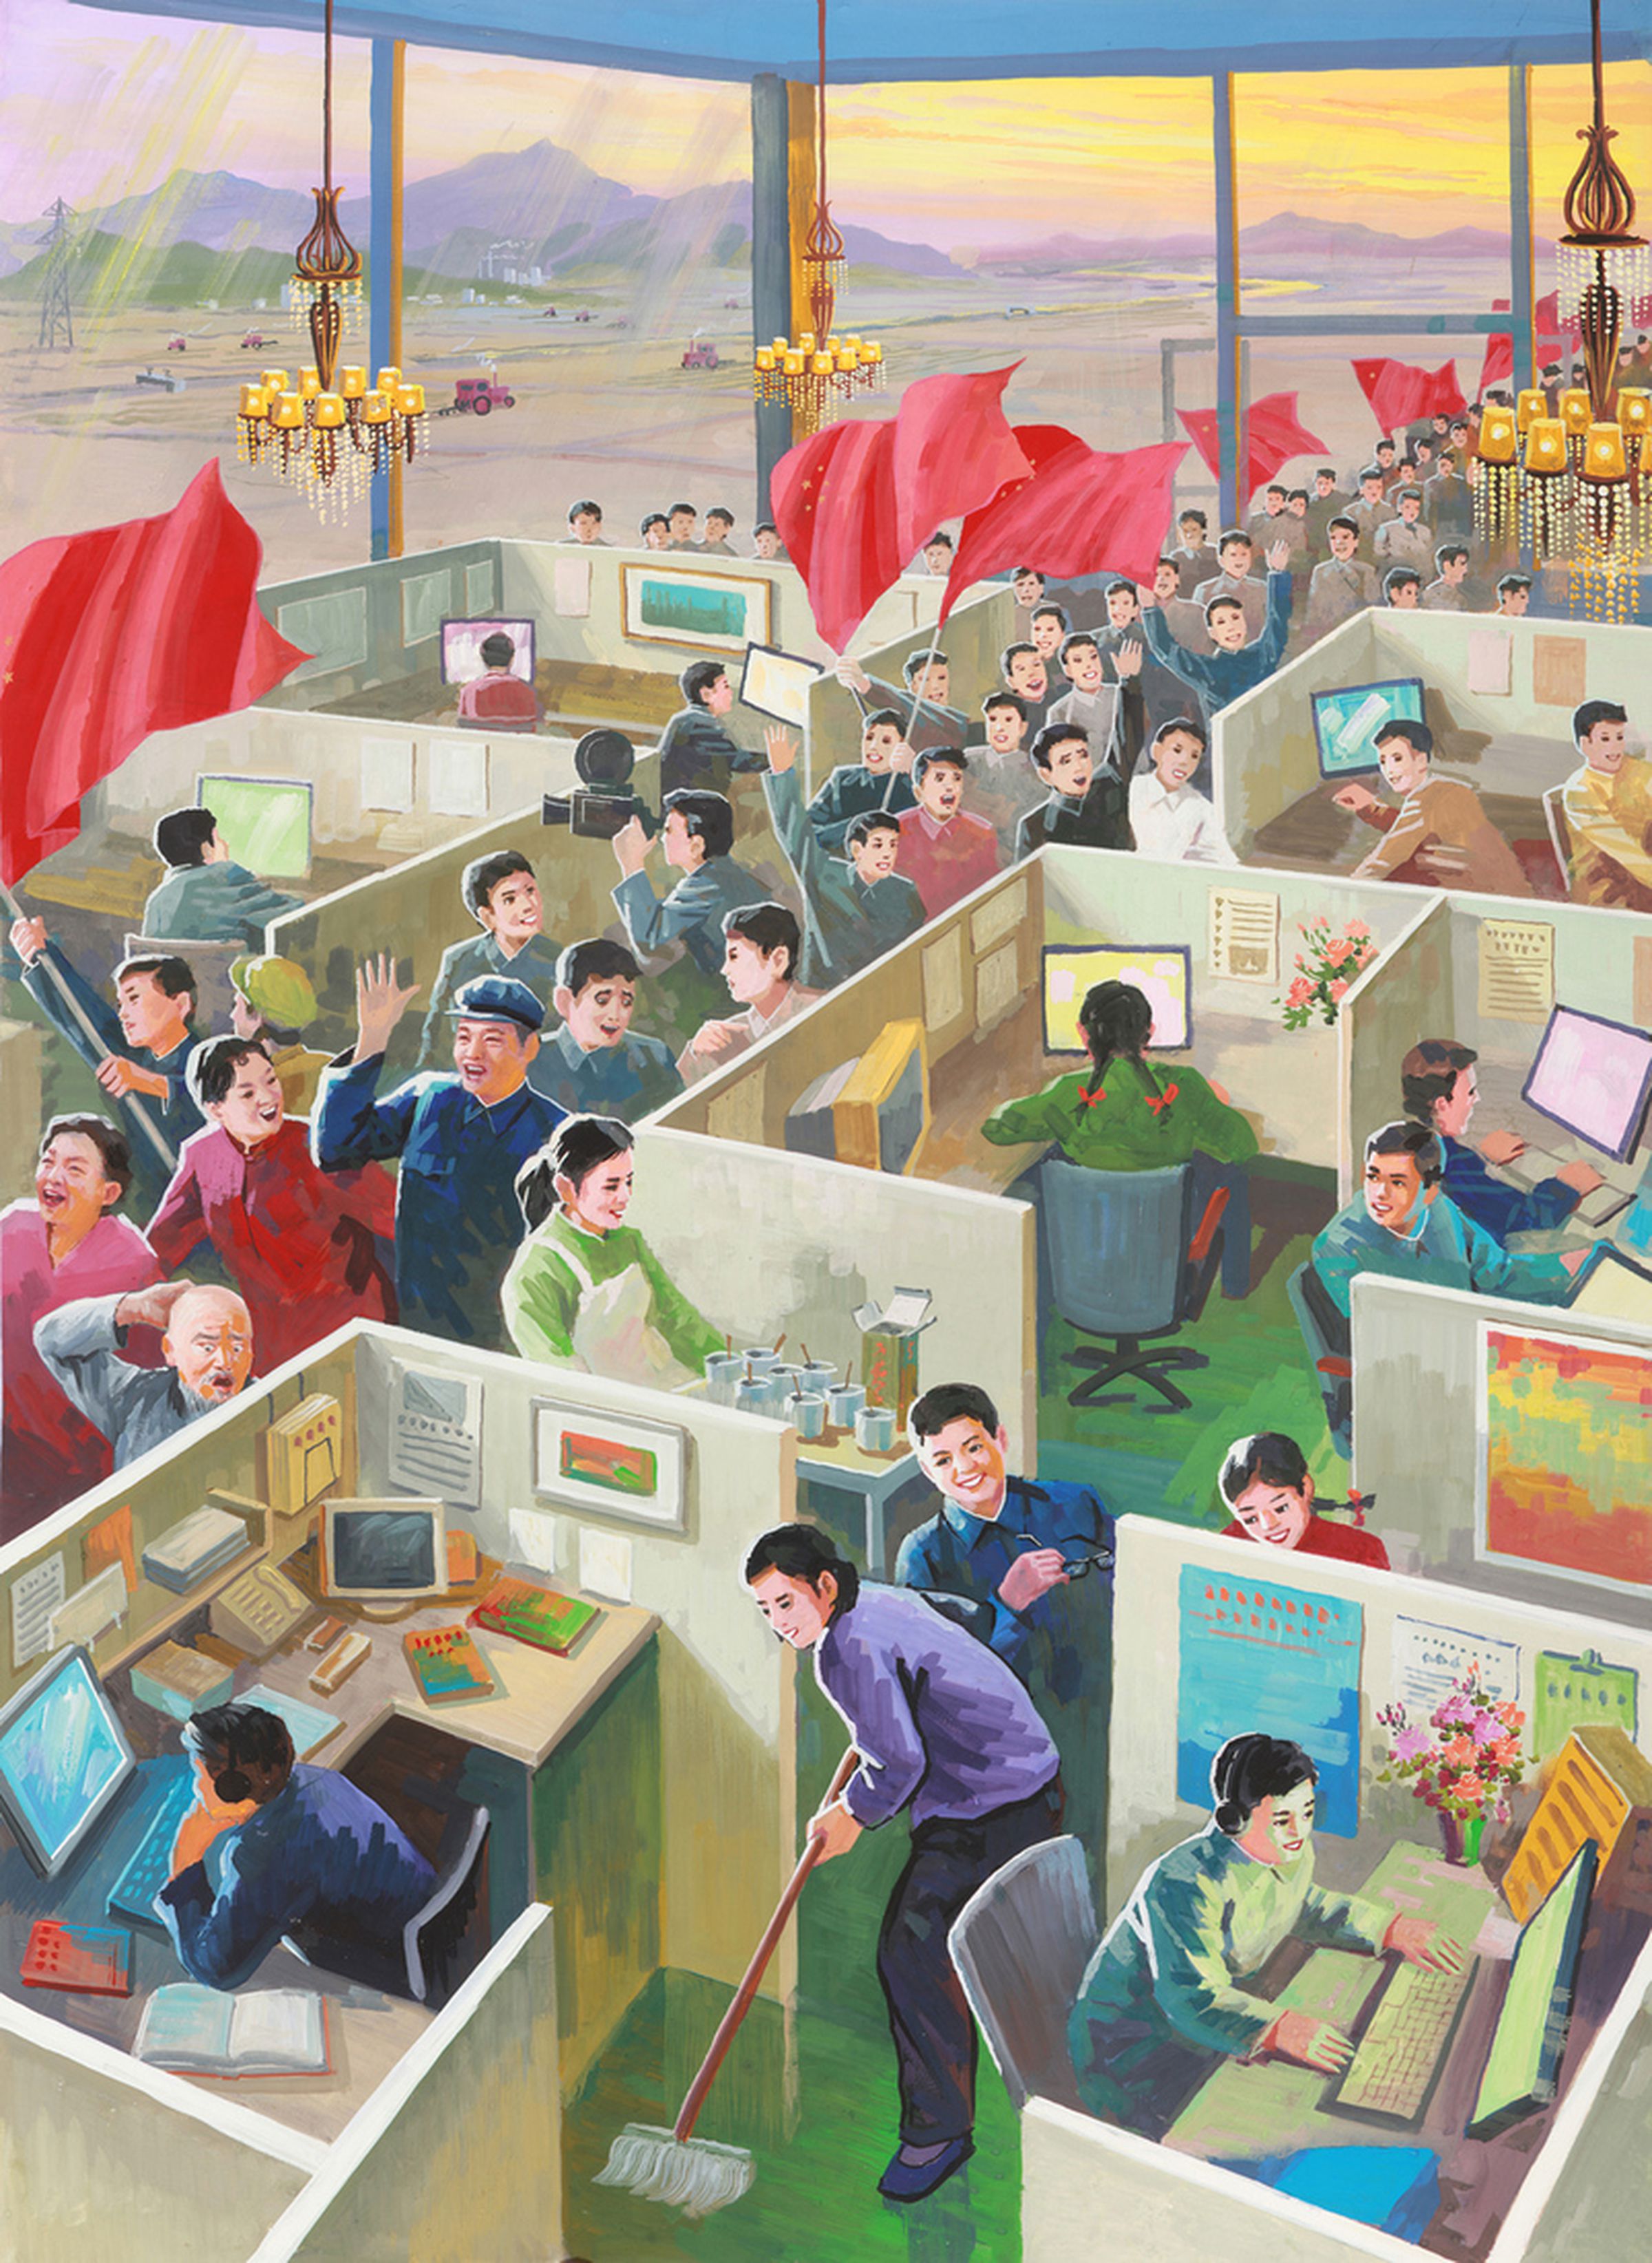 The Beautiful Future imagined Chinese propaganda posters